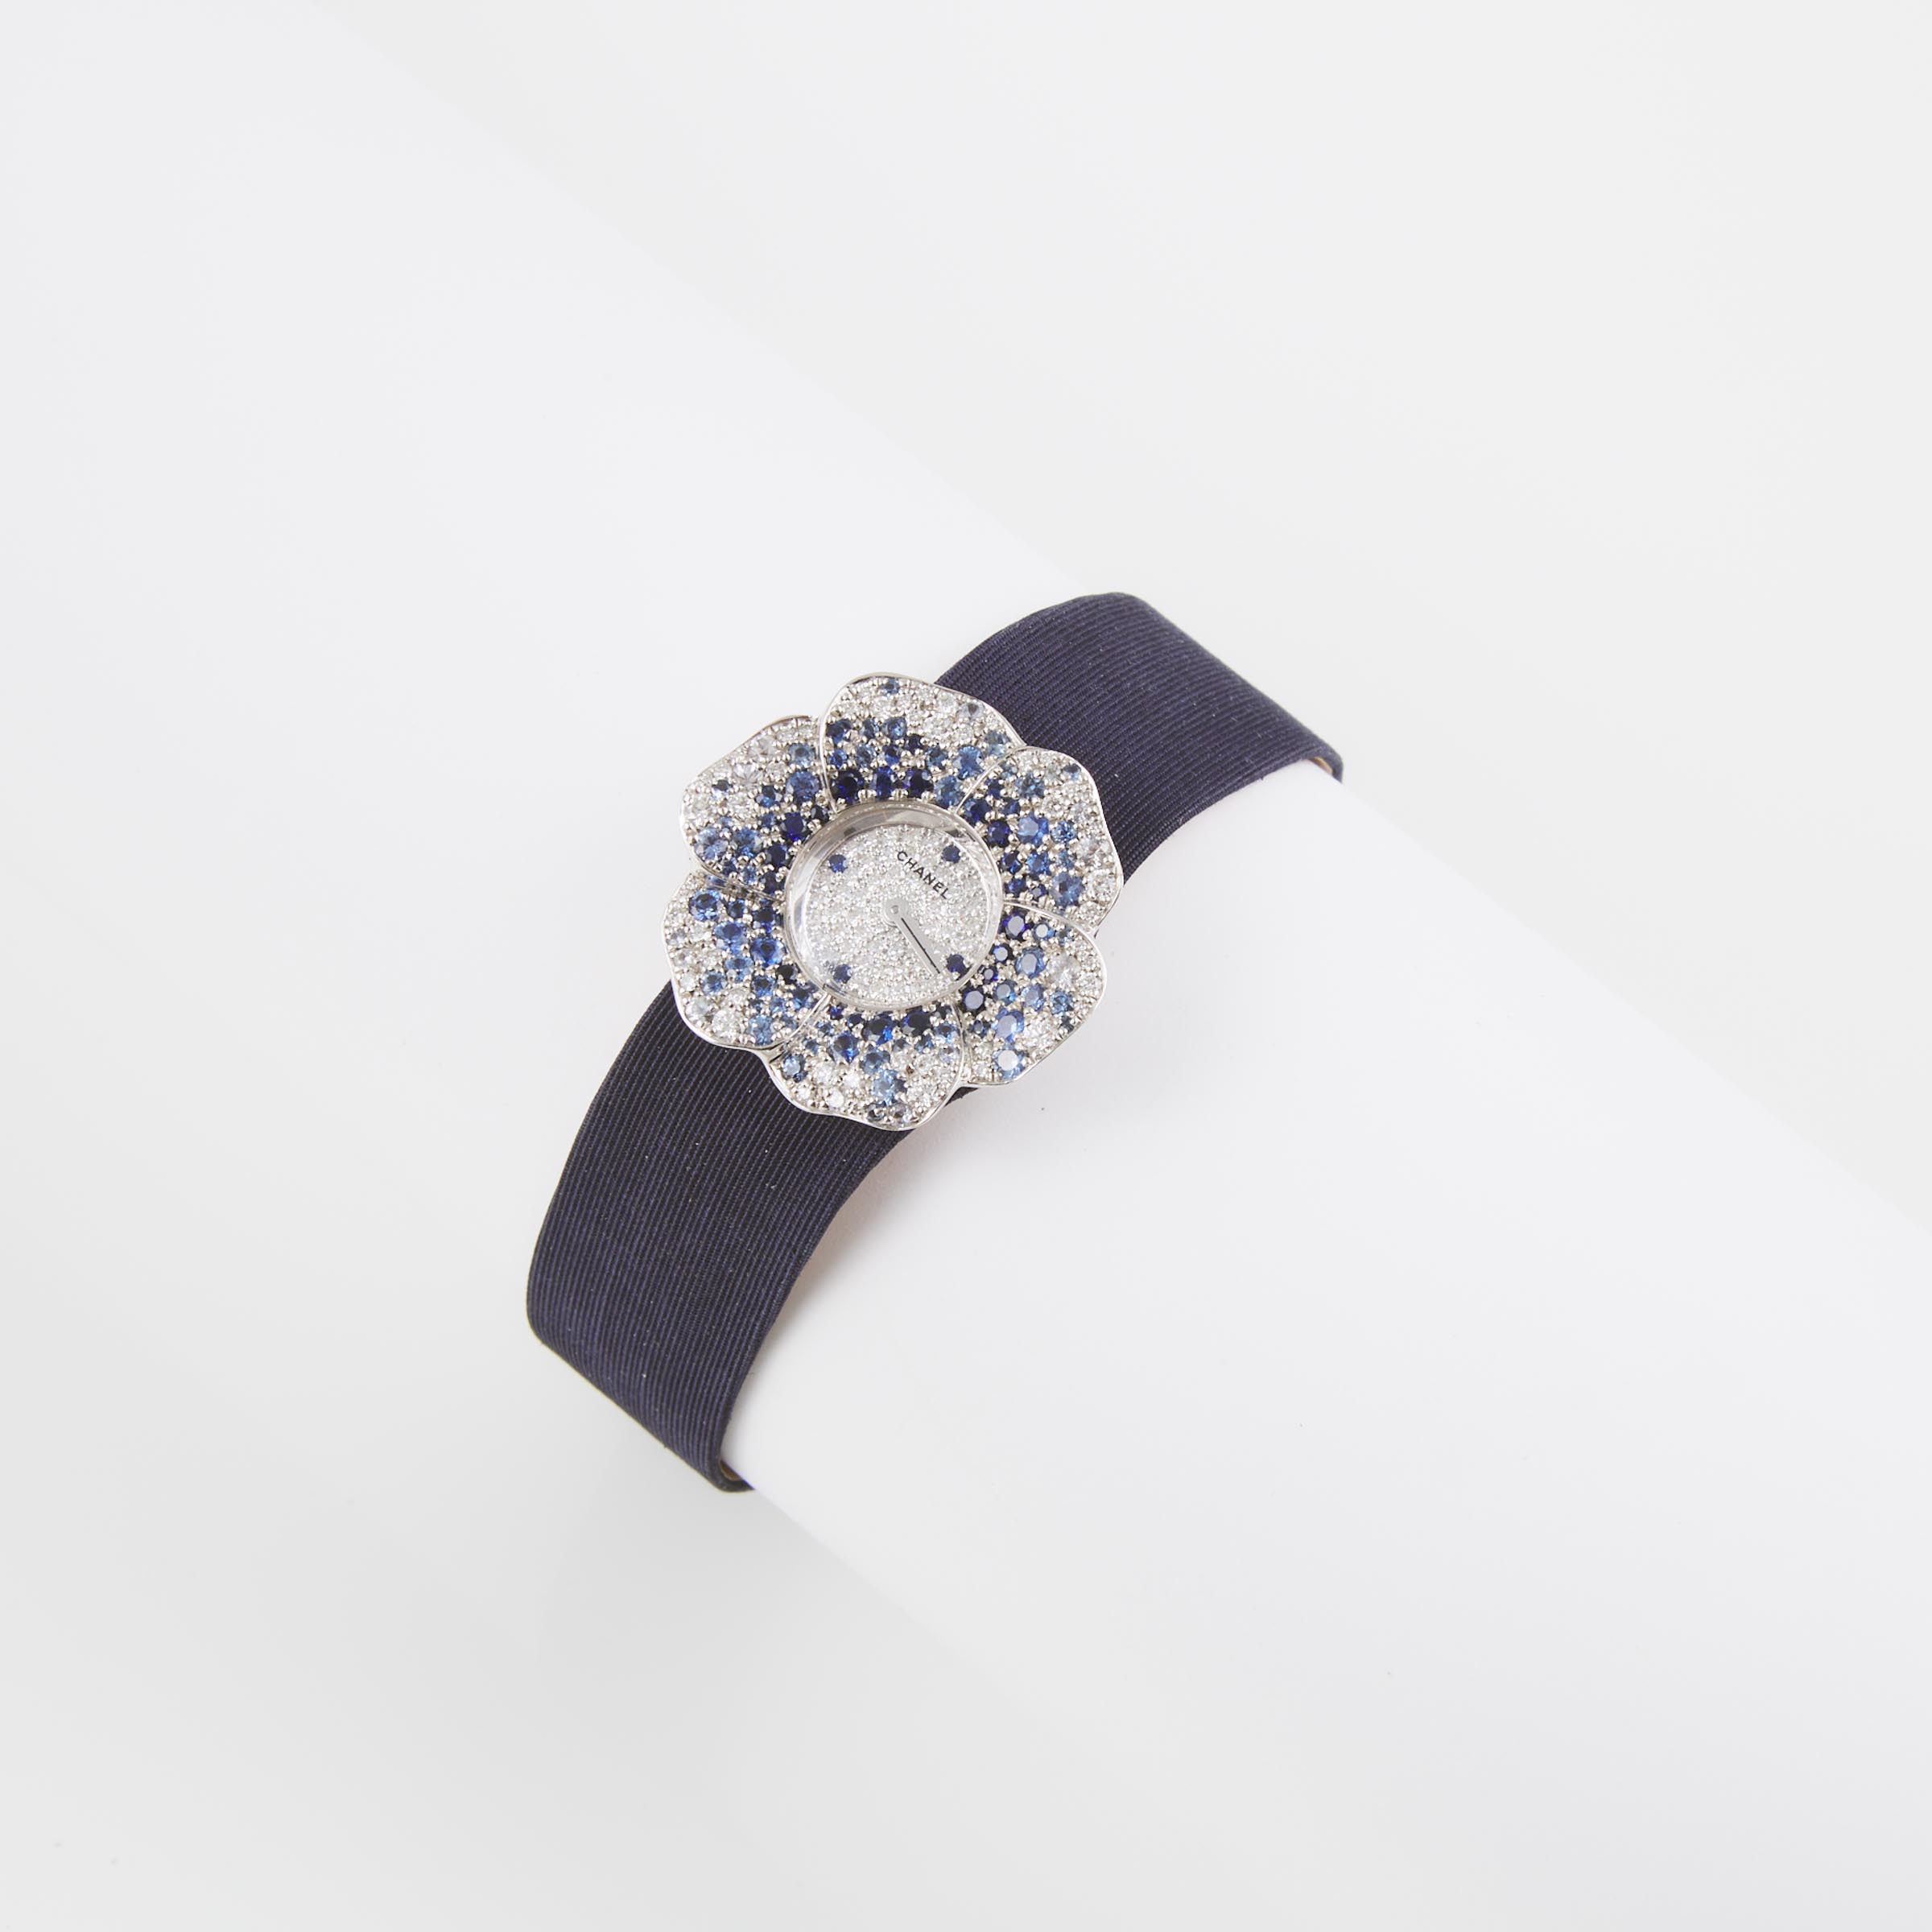 Lady's Chanel Camelia Wristwatch